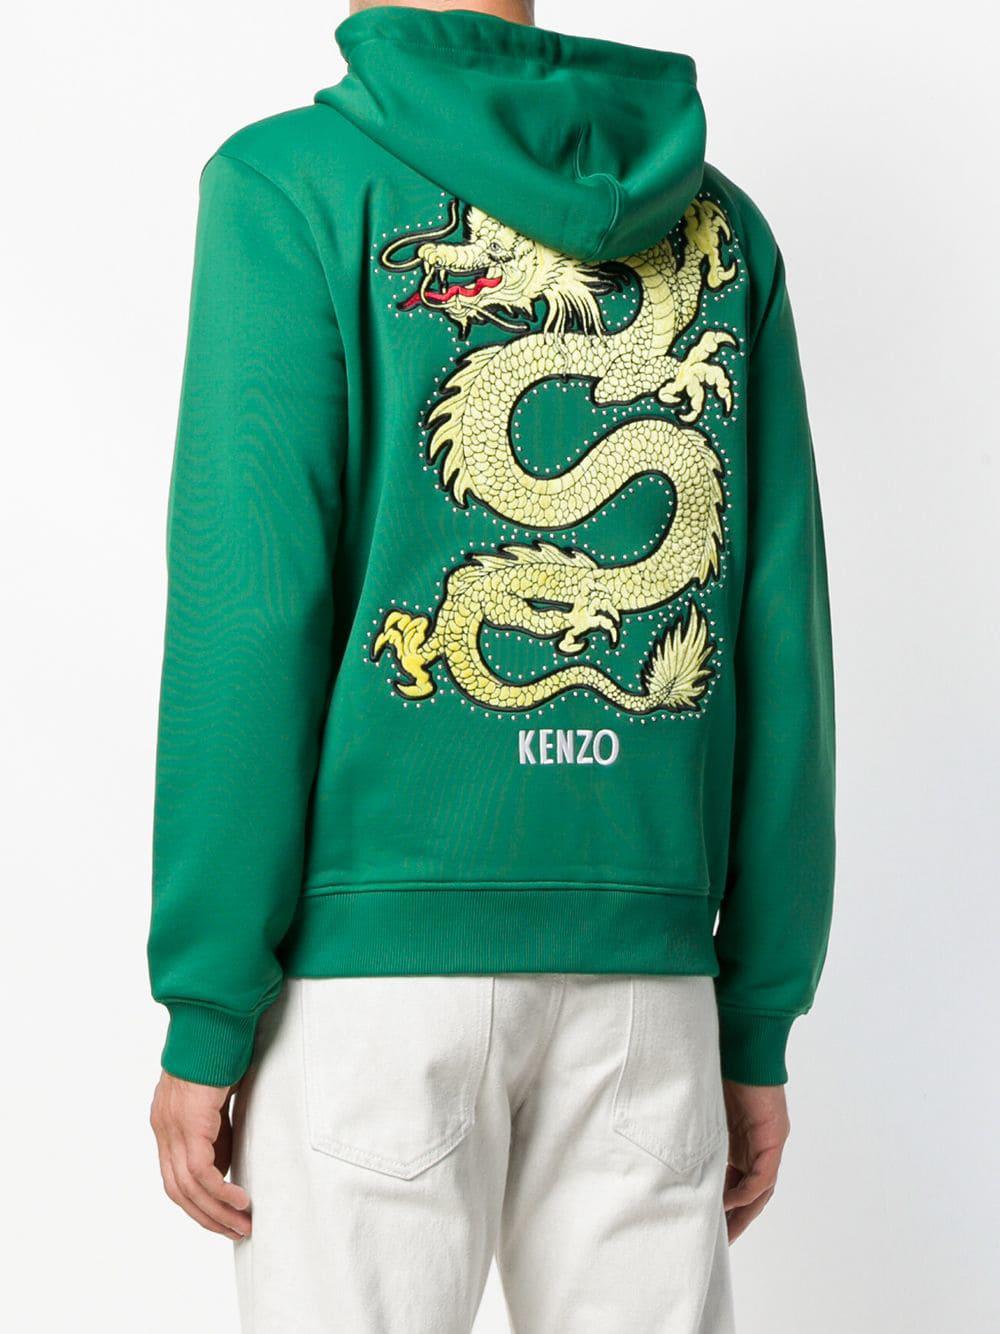 kenzo green hoodie